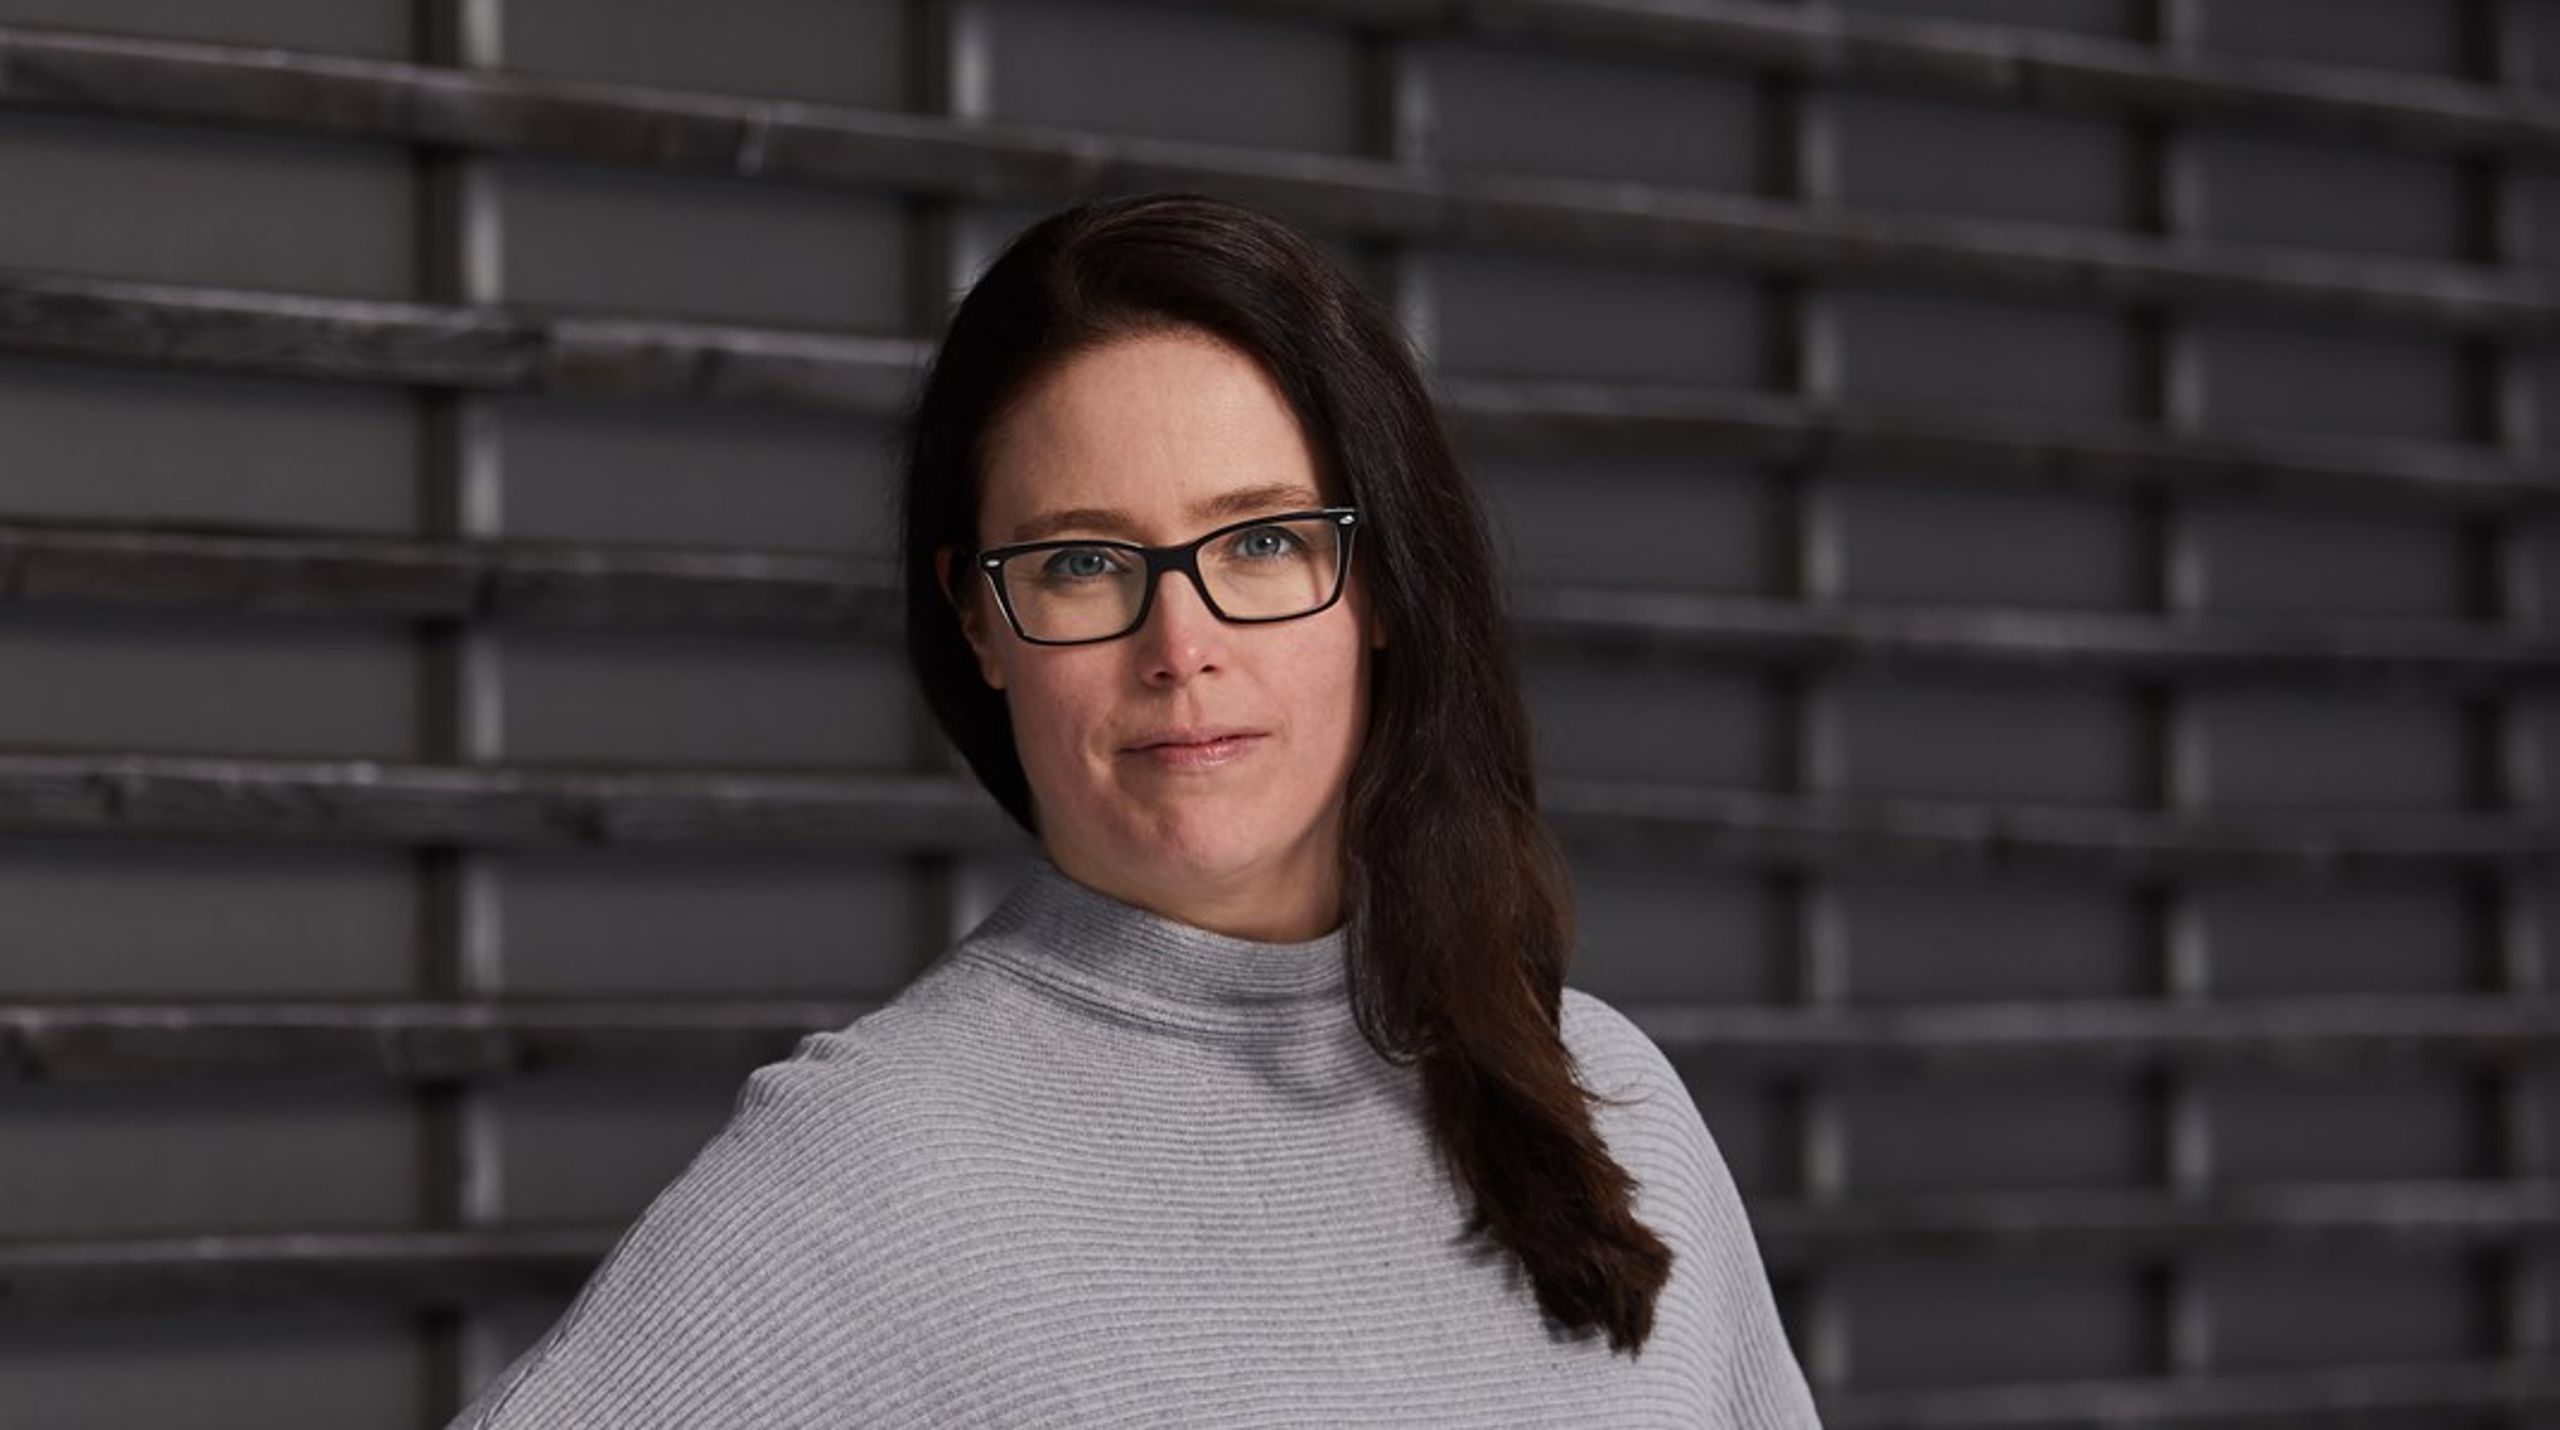 Forbundsleder i Norsk Tjenestemannslag, Kjersti Barsok, mener det er merkelig at en hovedsammenslutning går til streik for å svekke sin egen makt til fordel for arbeidsgiversiden.